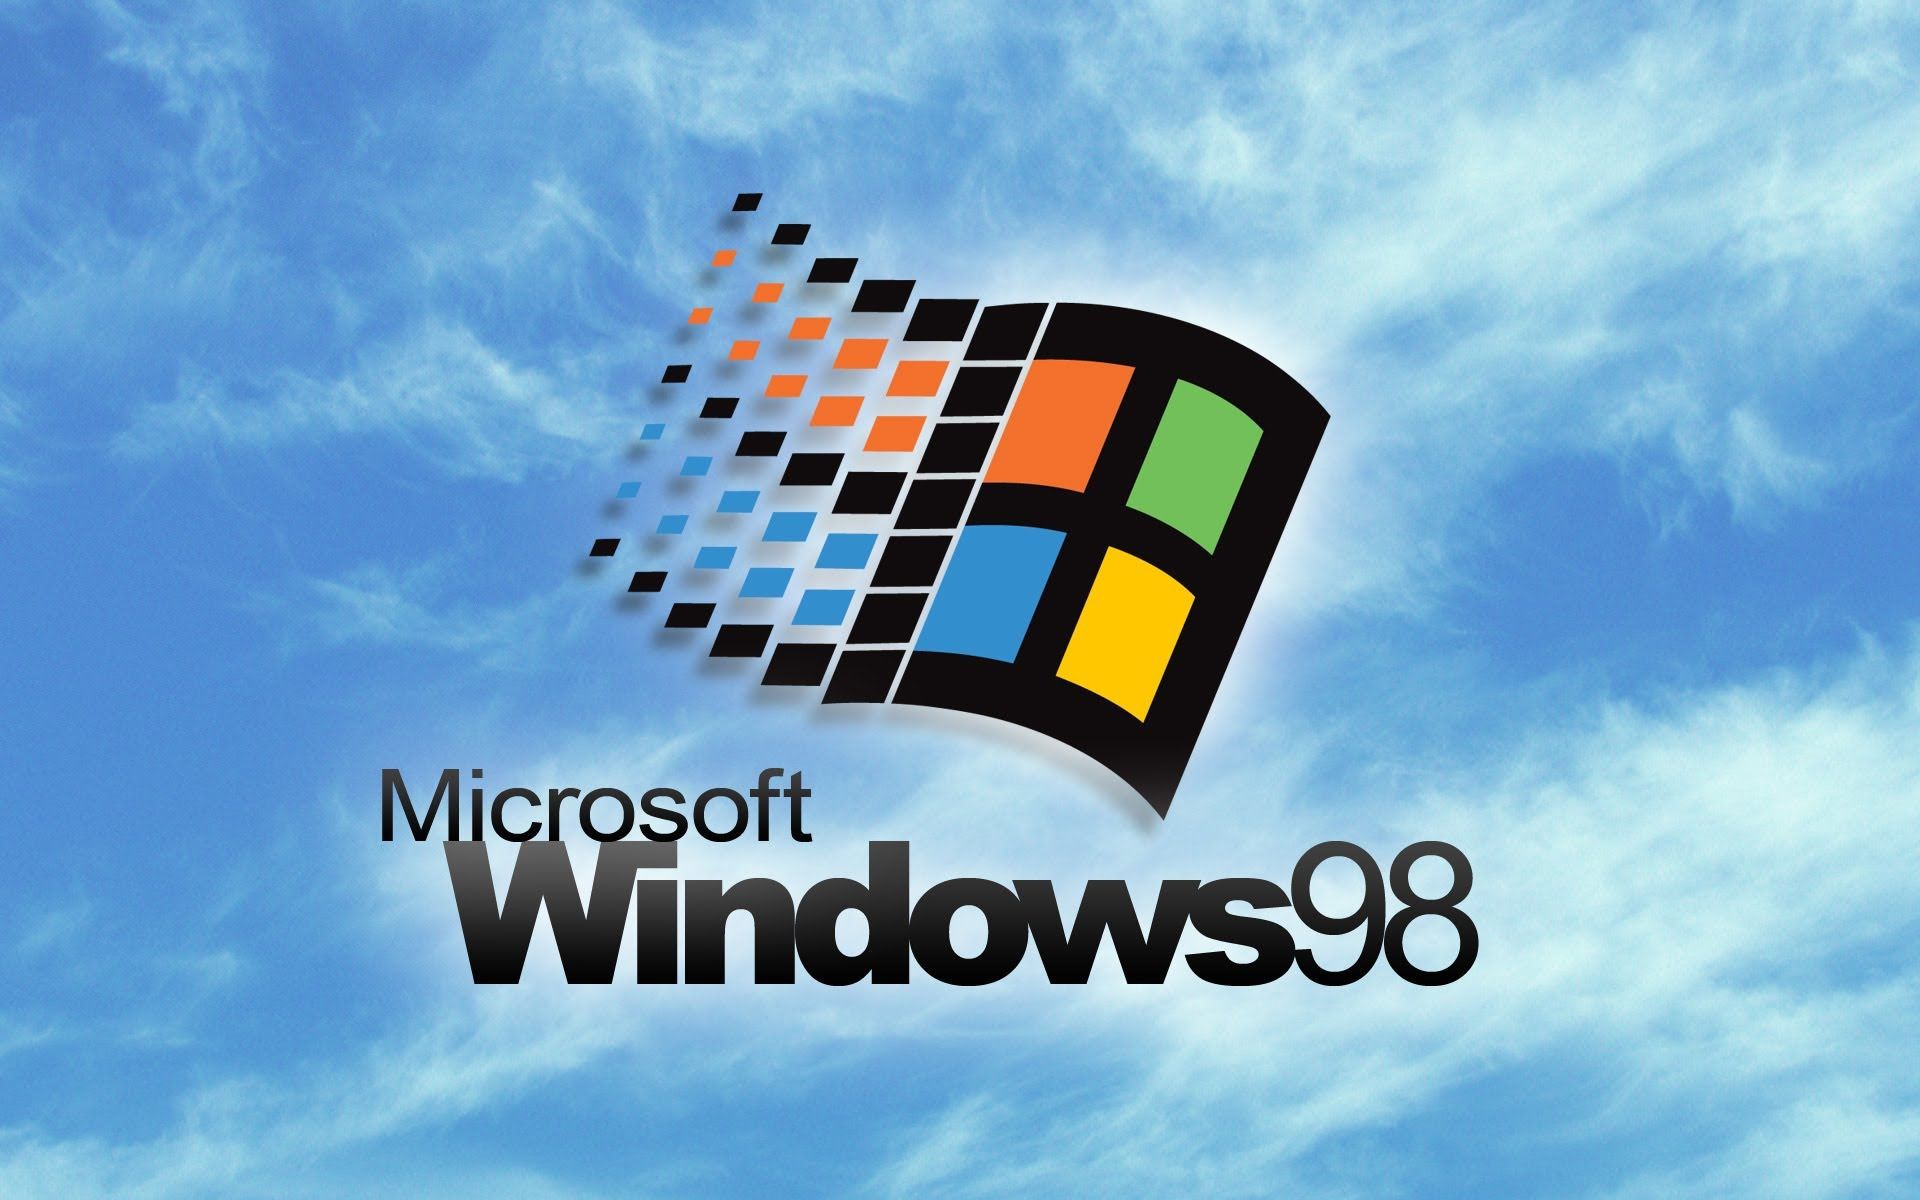 Hình nền Windows 98 mang đến sự độc đáo và huyền thoại với phong cách cổ điển nhưng không kém phần tươi mới. Nếu bạn là một người yêu thích cảm giác cổ điển, hãy ngắm nhìn bộ sưu tập hình nền này để cảm nhận được vẻ đẹp lịch sử của nó.